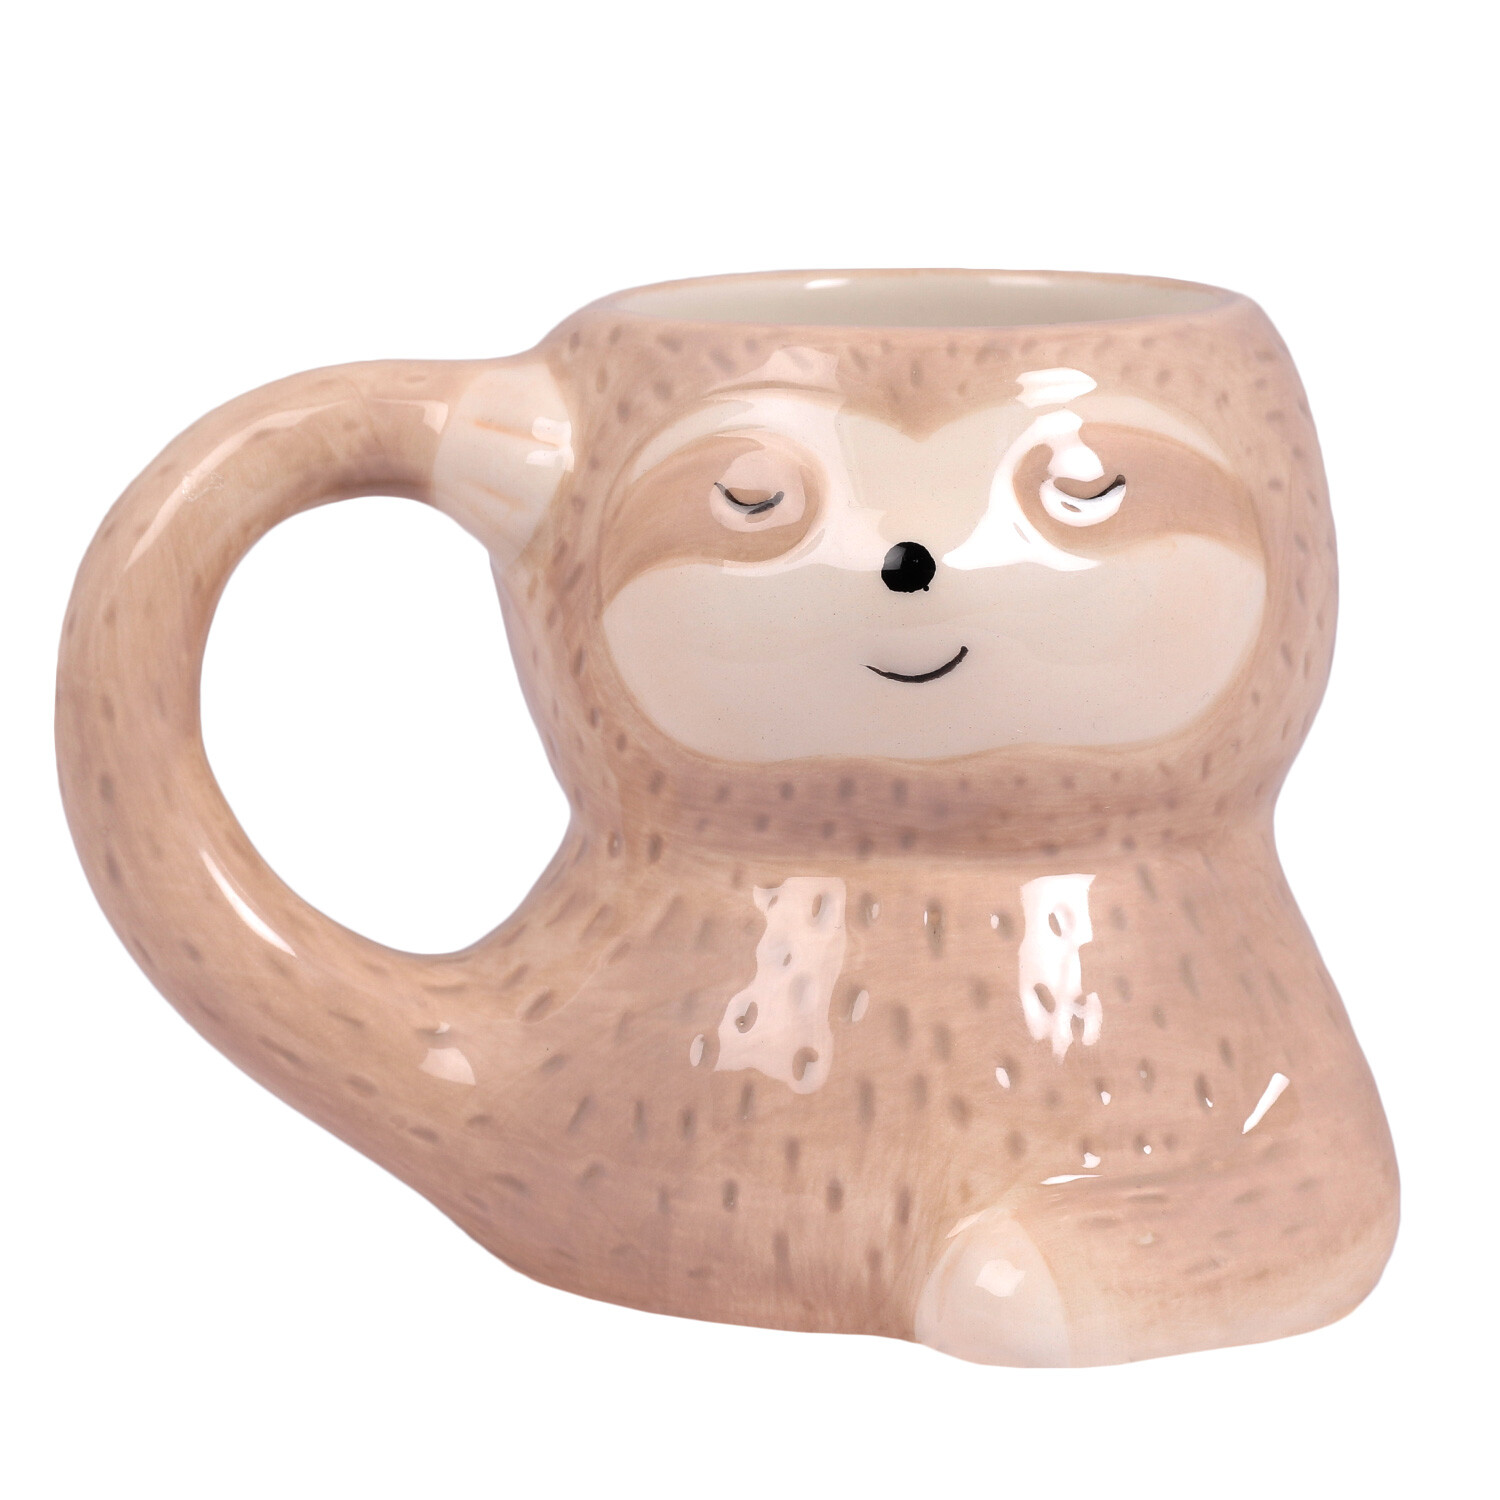 3D Sloth Mug - Brown Image 1